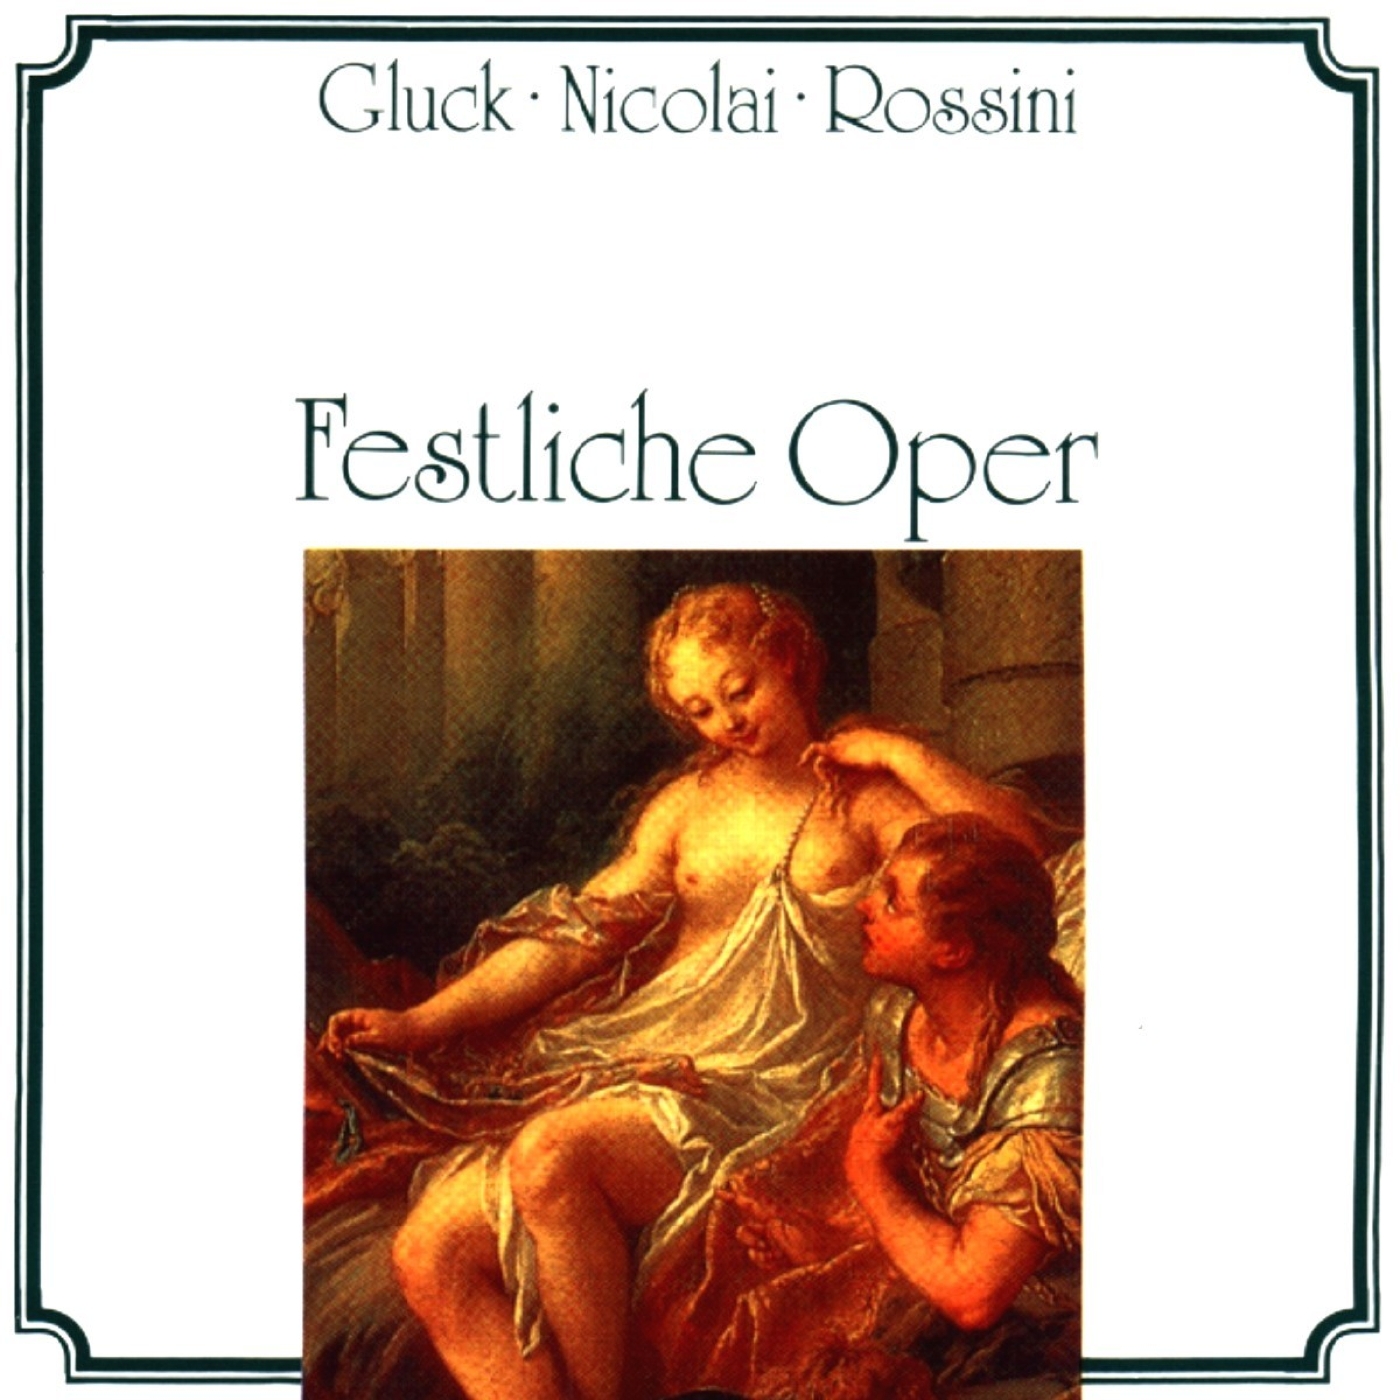 Gluck, Nicolai, Rossini: Festliche Oper